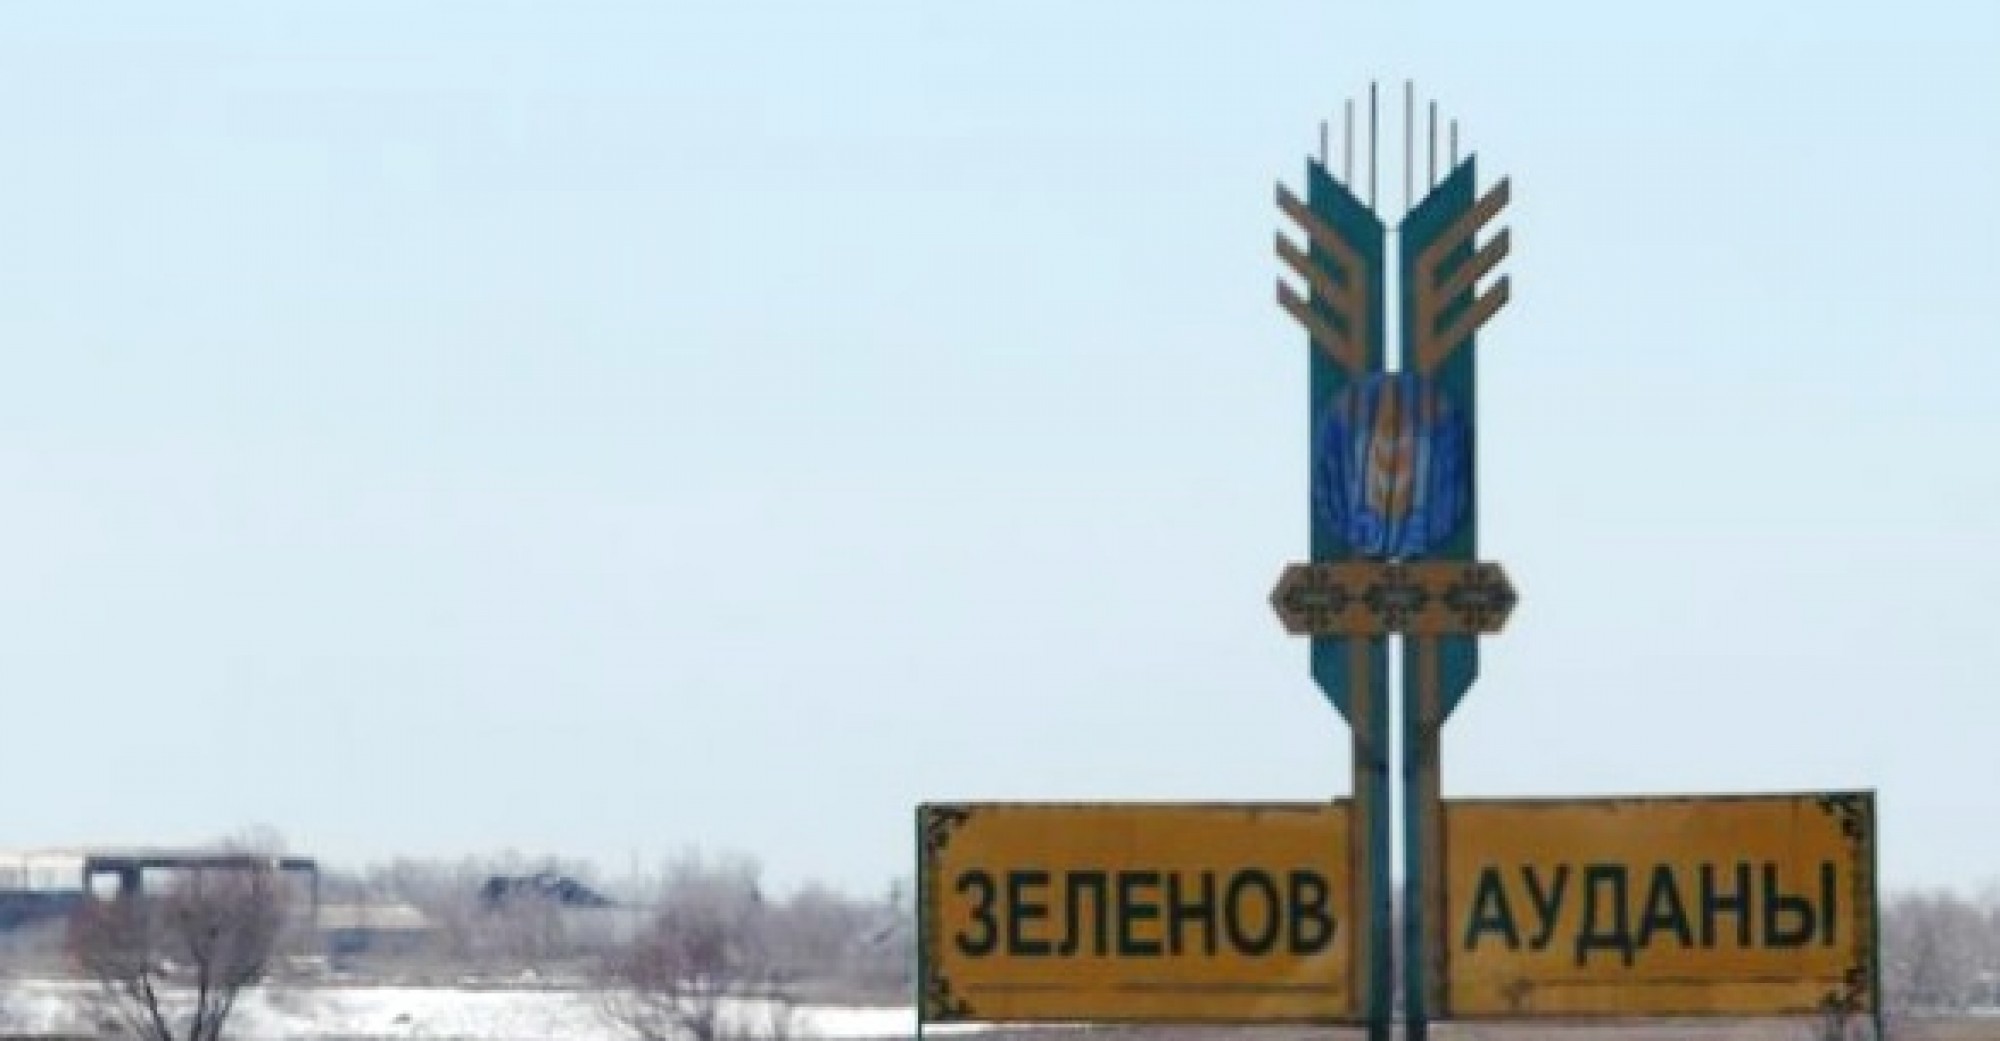 Елбасы Жарлығымен БҚО Зеленов ауданының атауы Бәйтерек деп өзгертілді